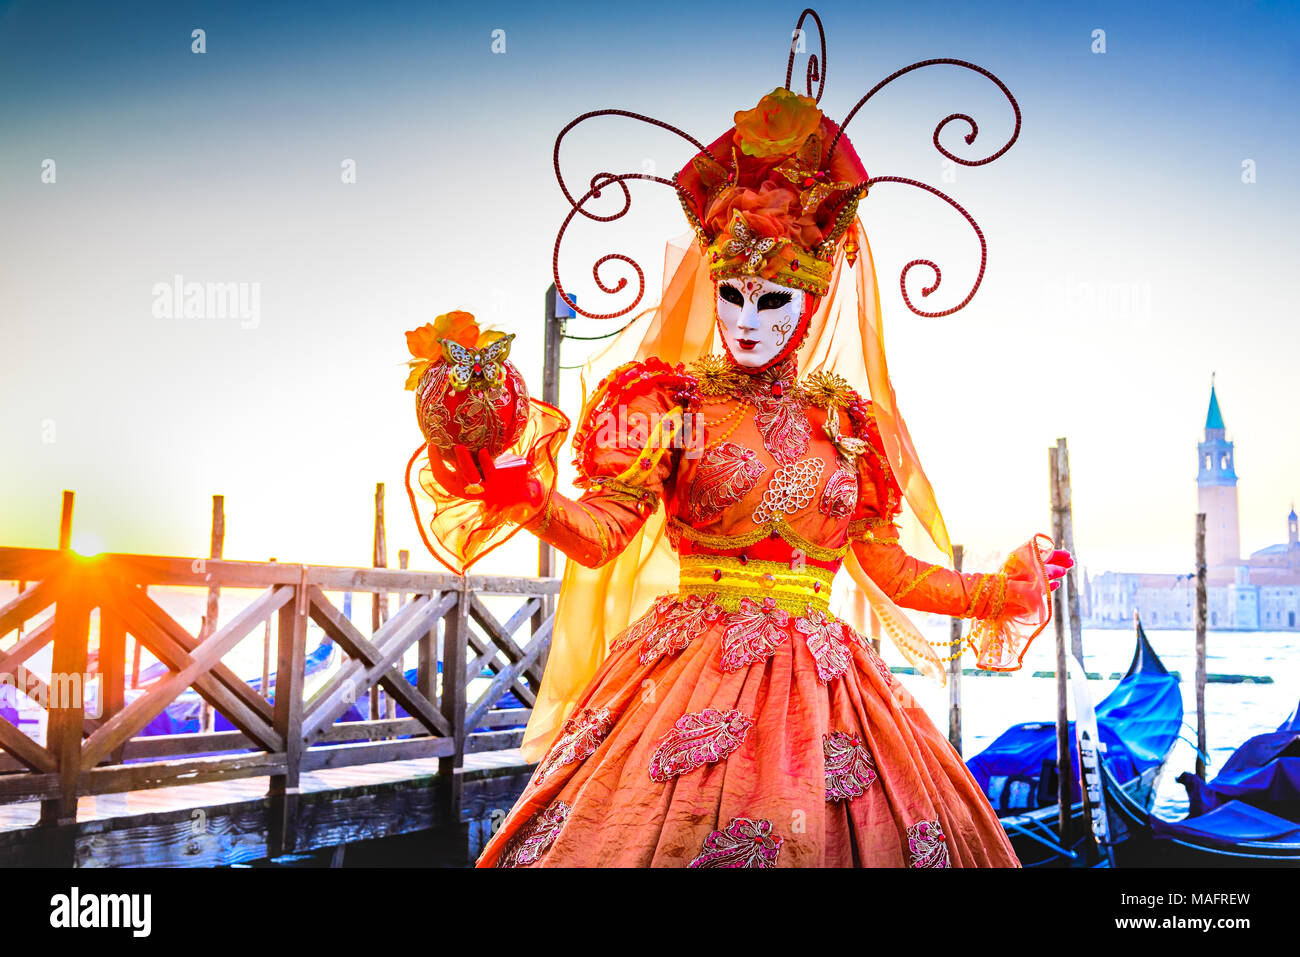 Venezia, Italia - 9 Febbraio 2018: il Carnevale di Venezia, bella maschera in Piazza San Marco con gondole e Grand Canal. Foto Stock